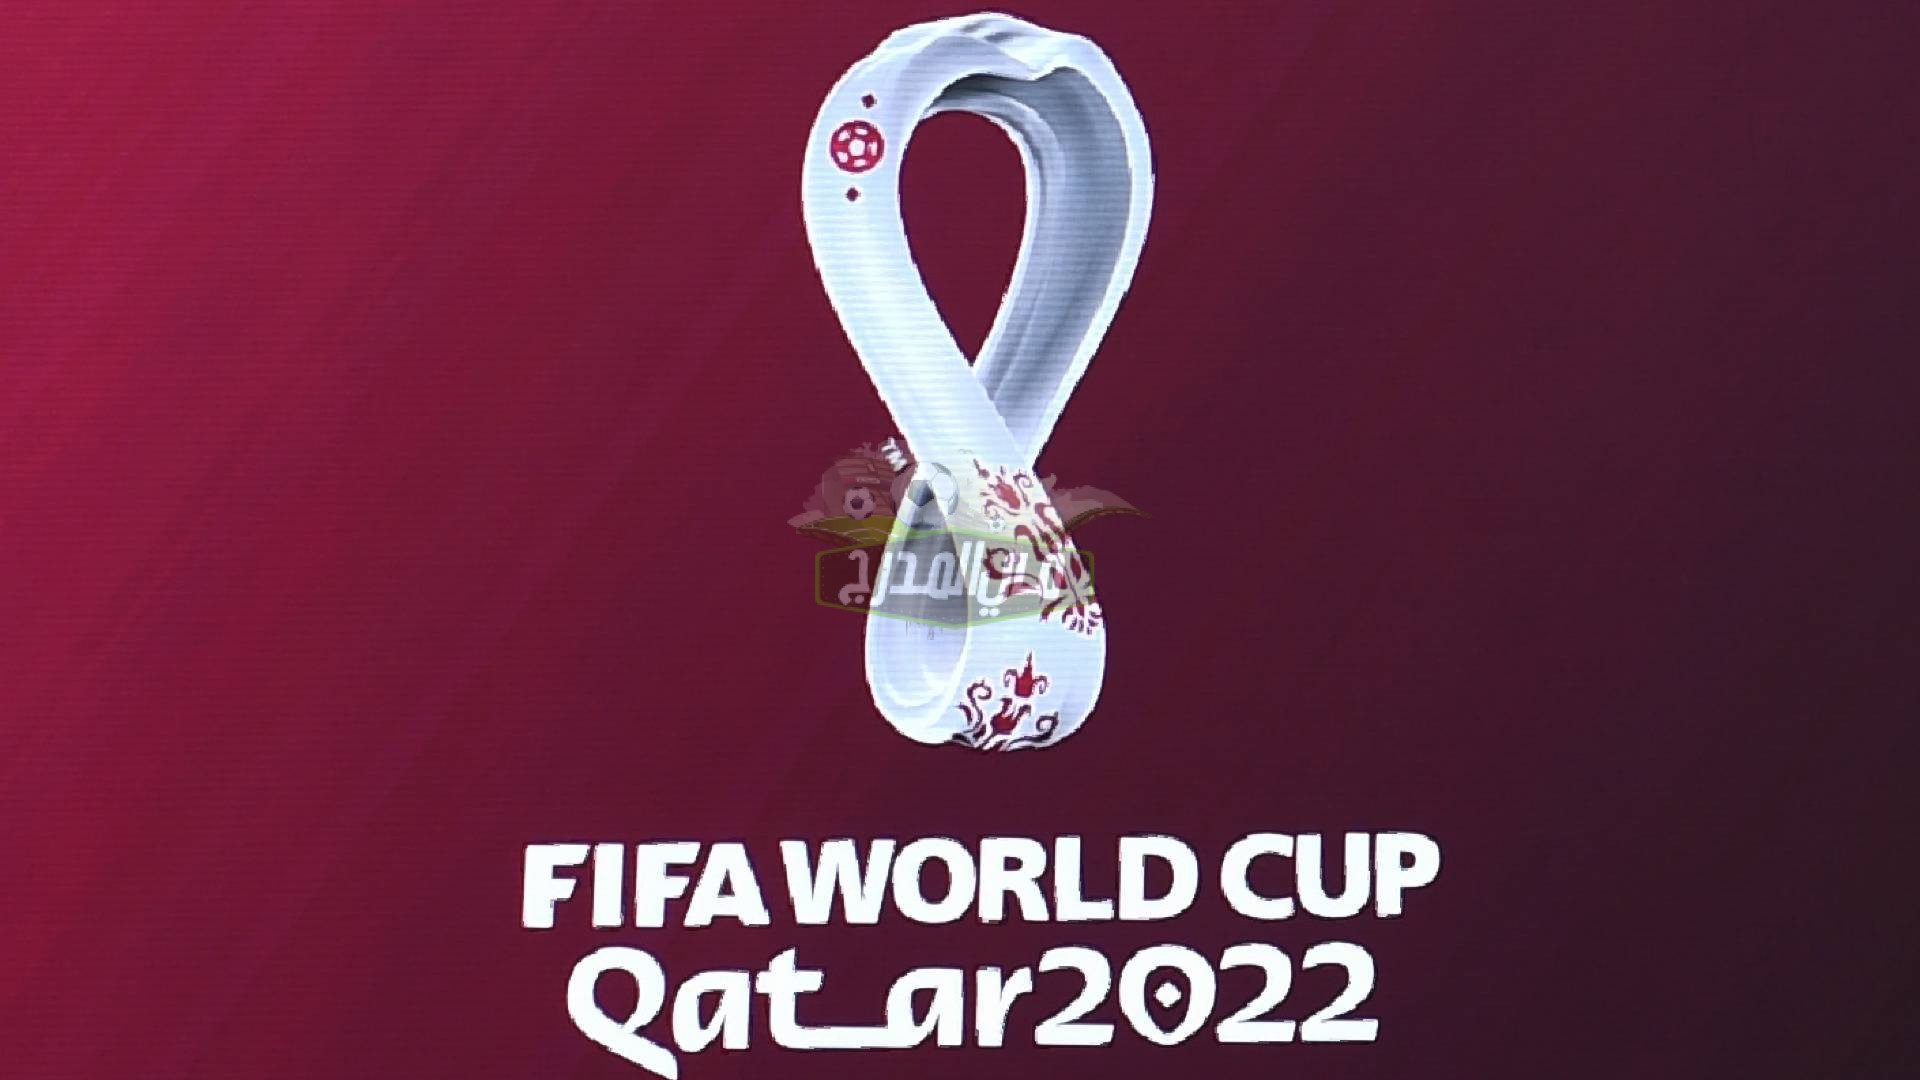 ليست الهوية.. تردد قناة مفتوحة تنقل مباريات كأس العالم قطر 2022 مجانا